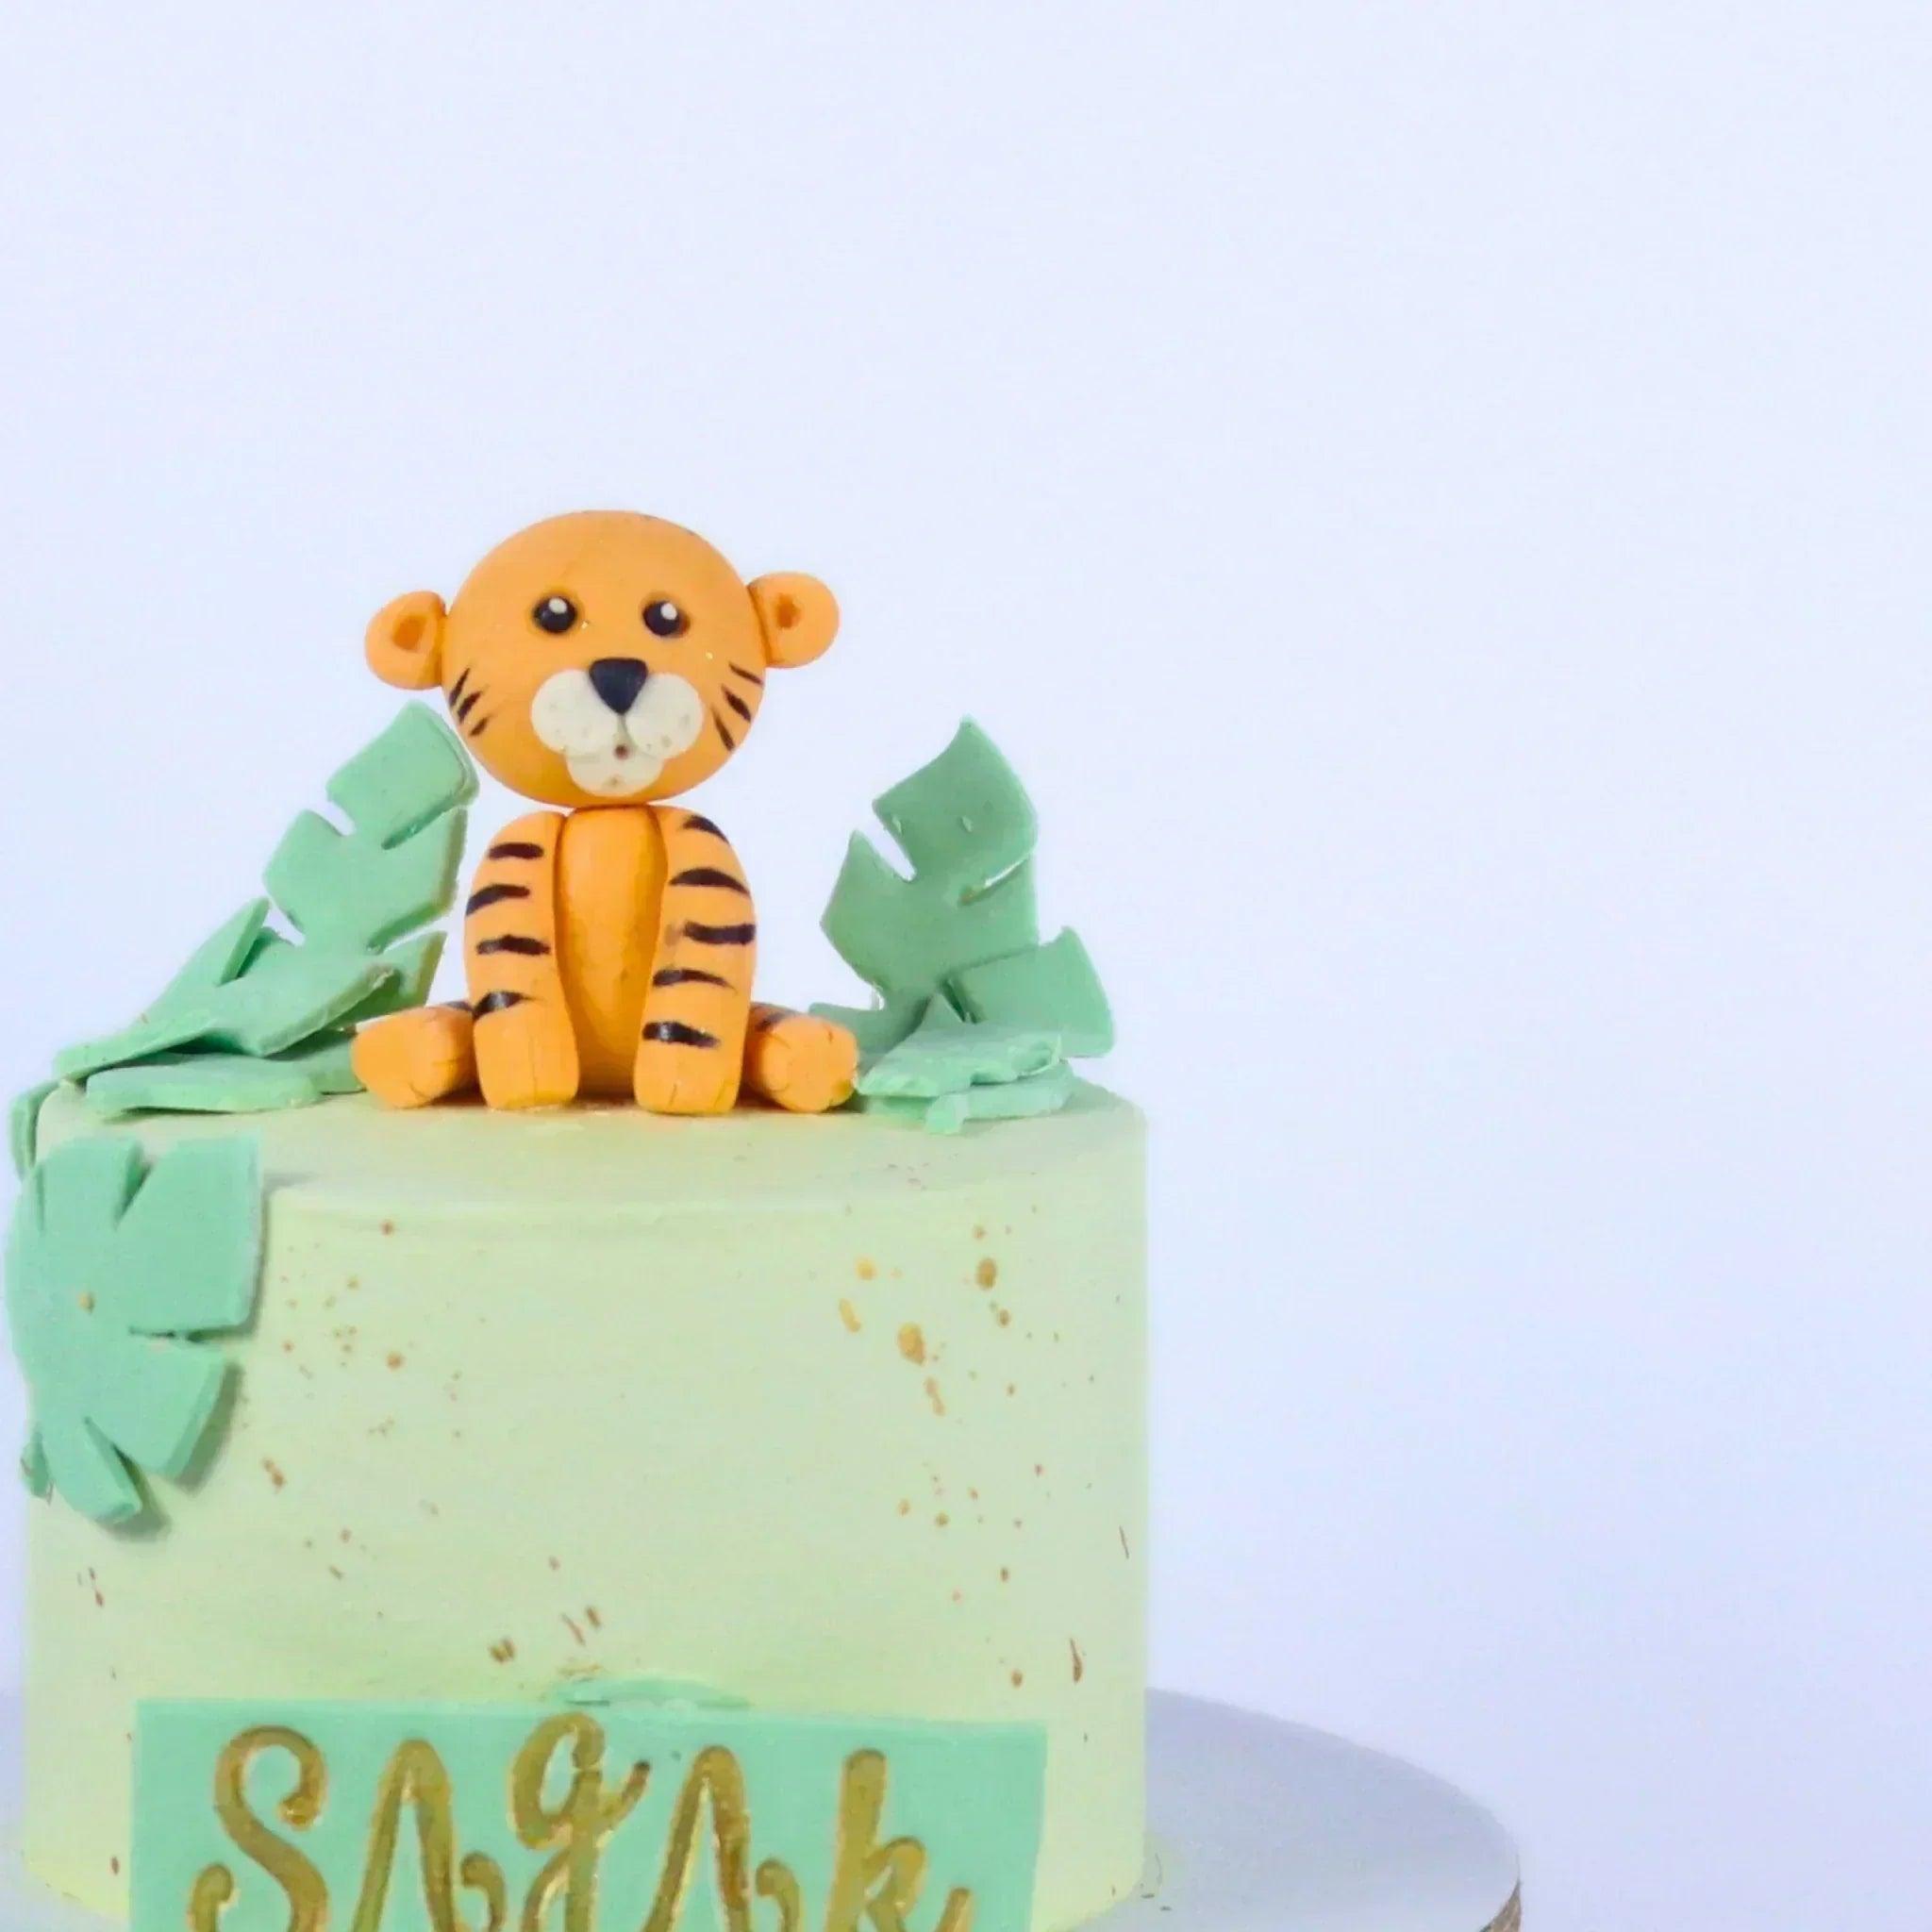 Tiger Birthday Cake - Rubyrings người hâm mộ Art (42920503) - fanpop